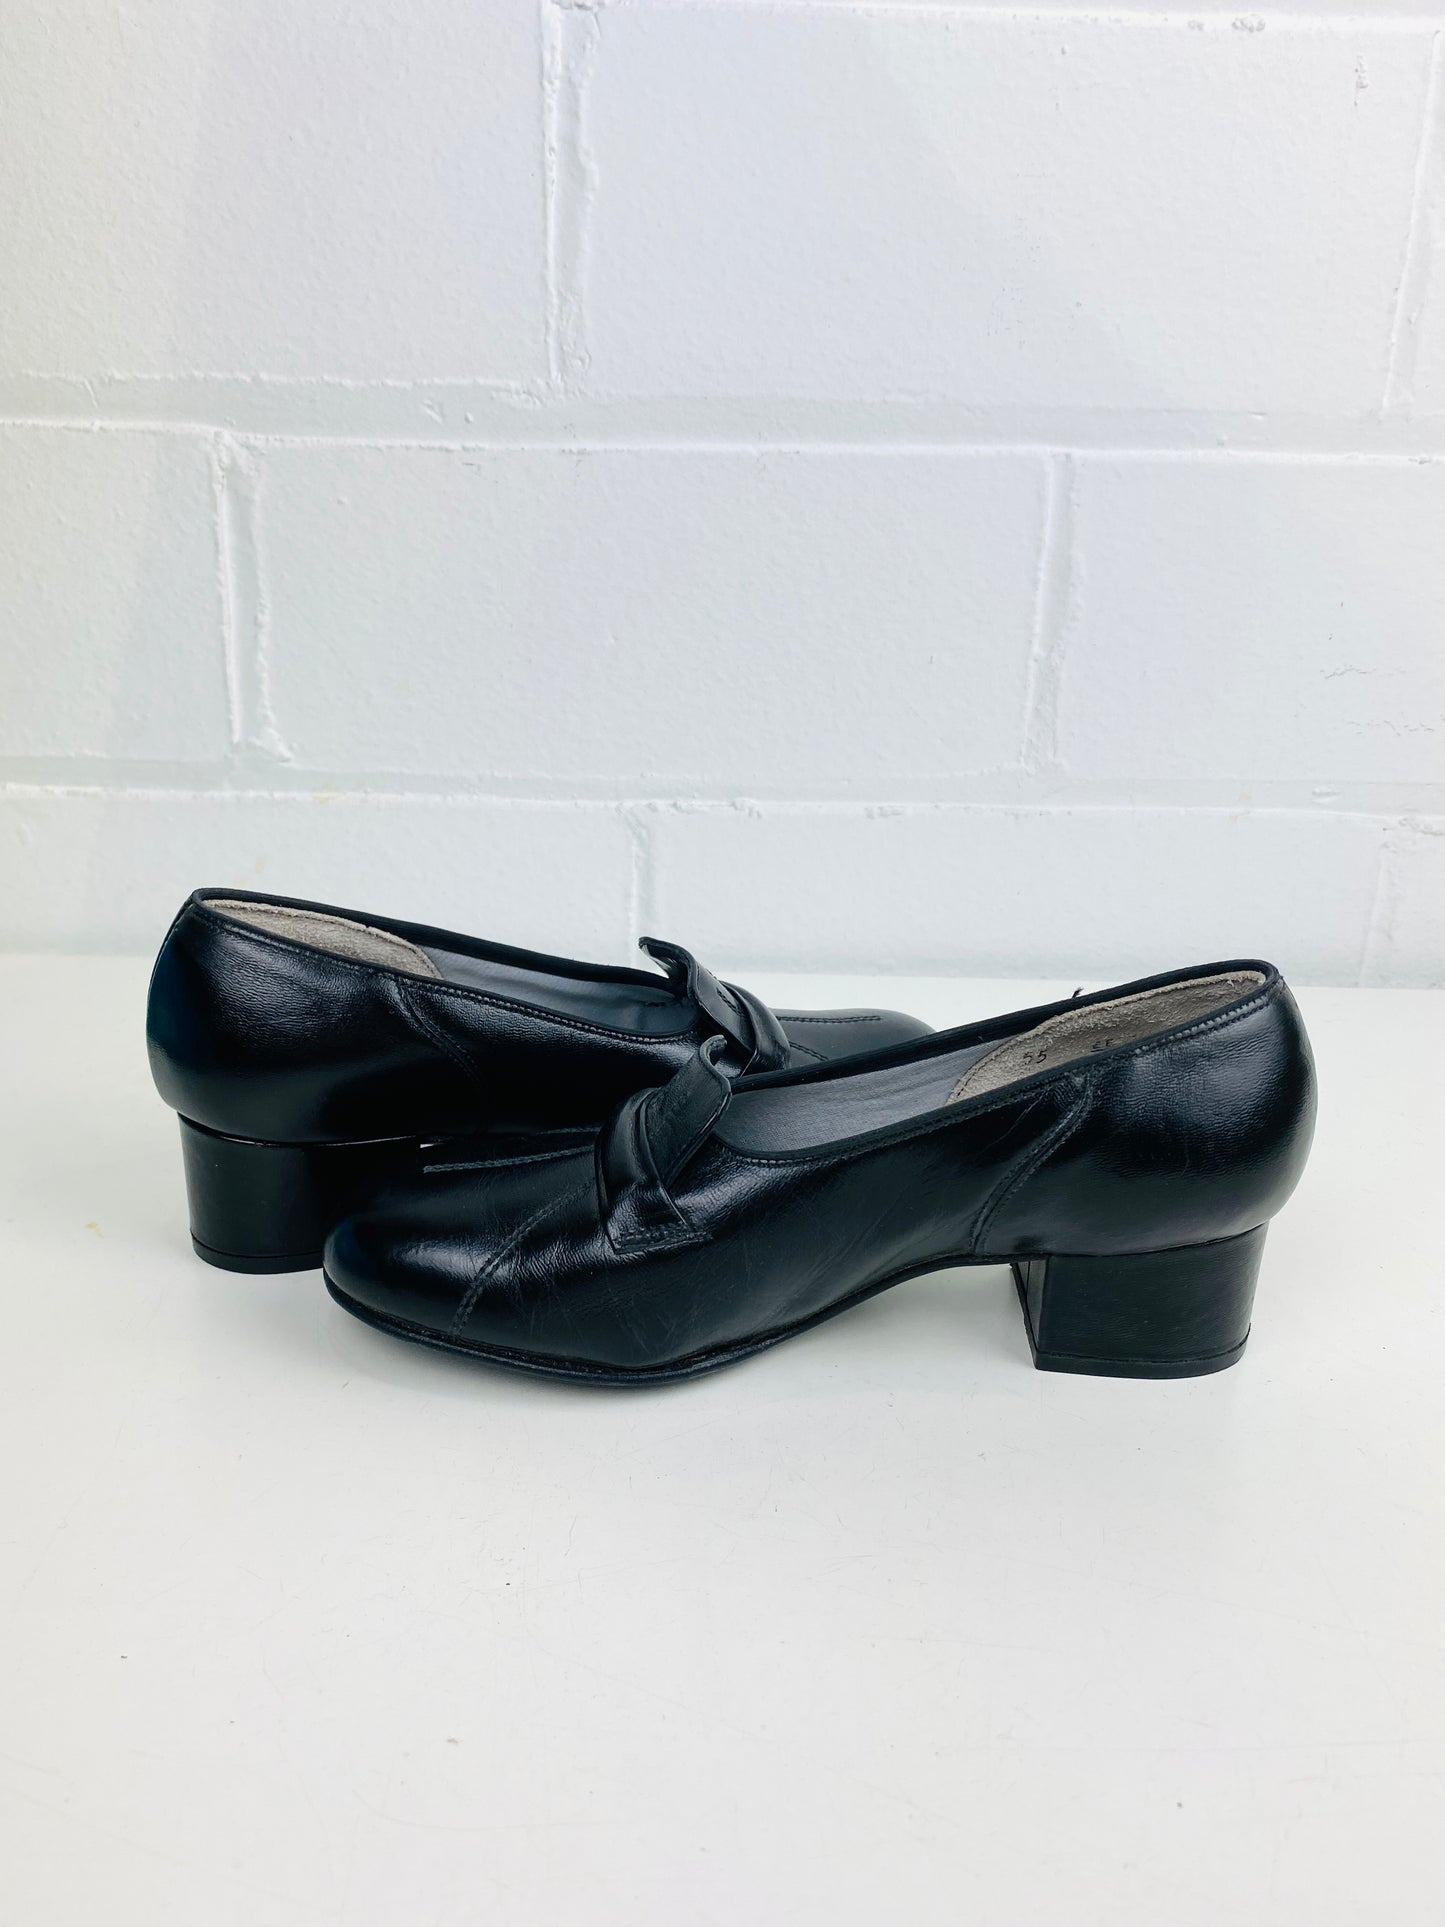 Vintage Deadstock Shoes, Women's 1980s Black Leather Pump's, Cuban Heels, NOS, 6506